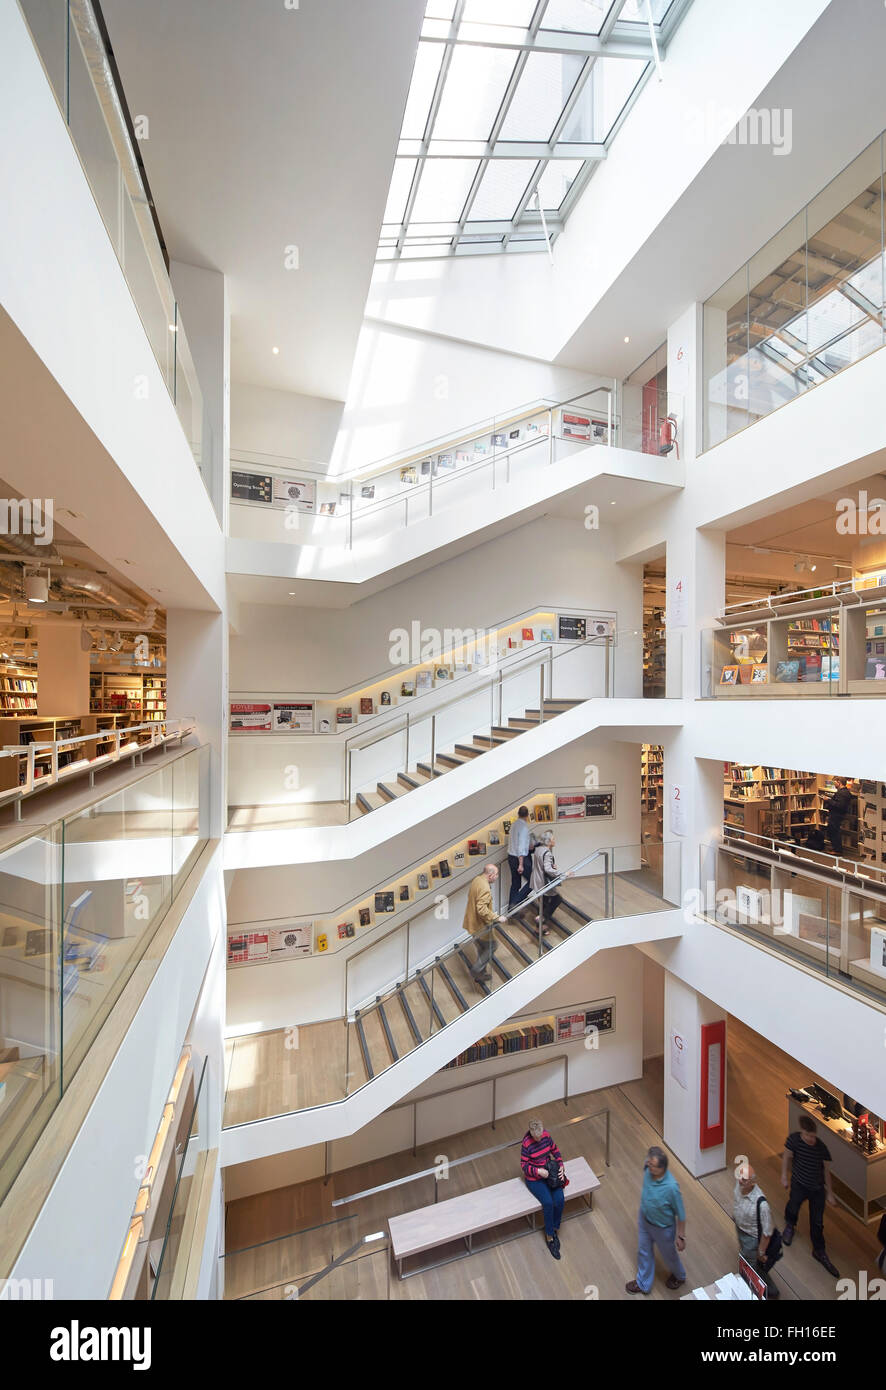 Une vue globale de l'atrium central avec escalier et lucarne. Foyles, Londres, Royaume-Uni. Architecte : Lifschutz, 2014. Banque D'Images